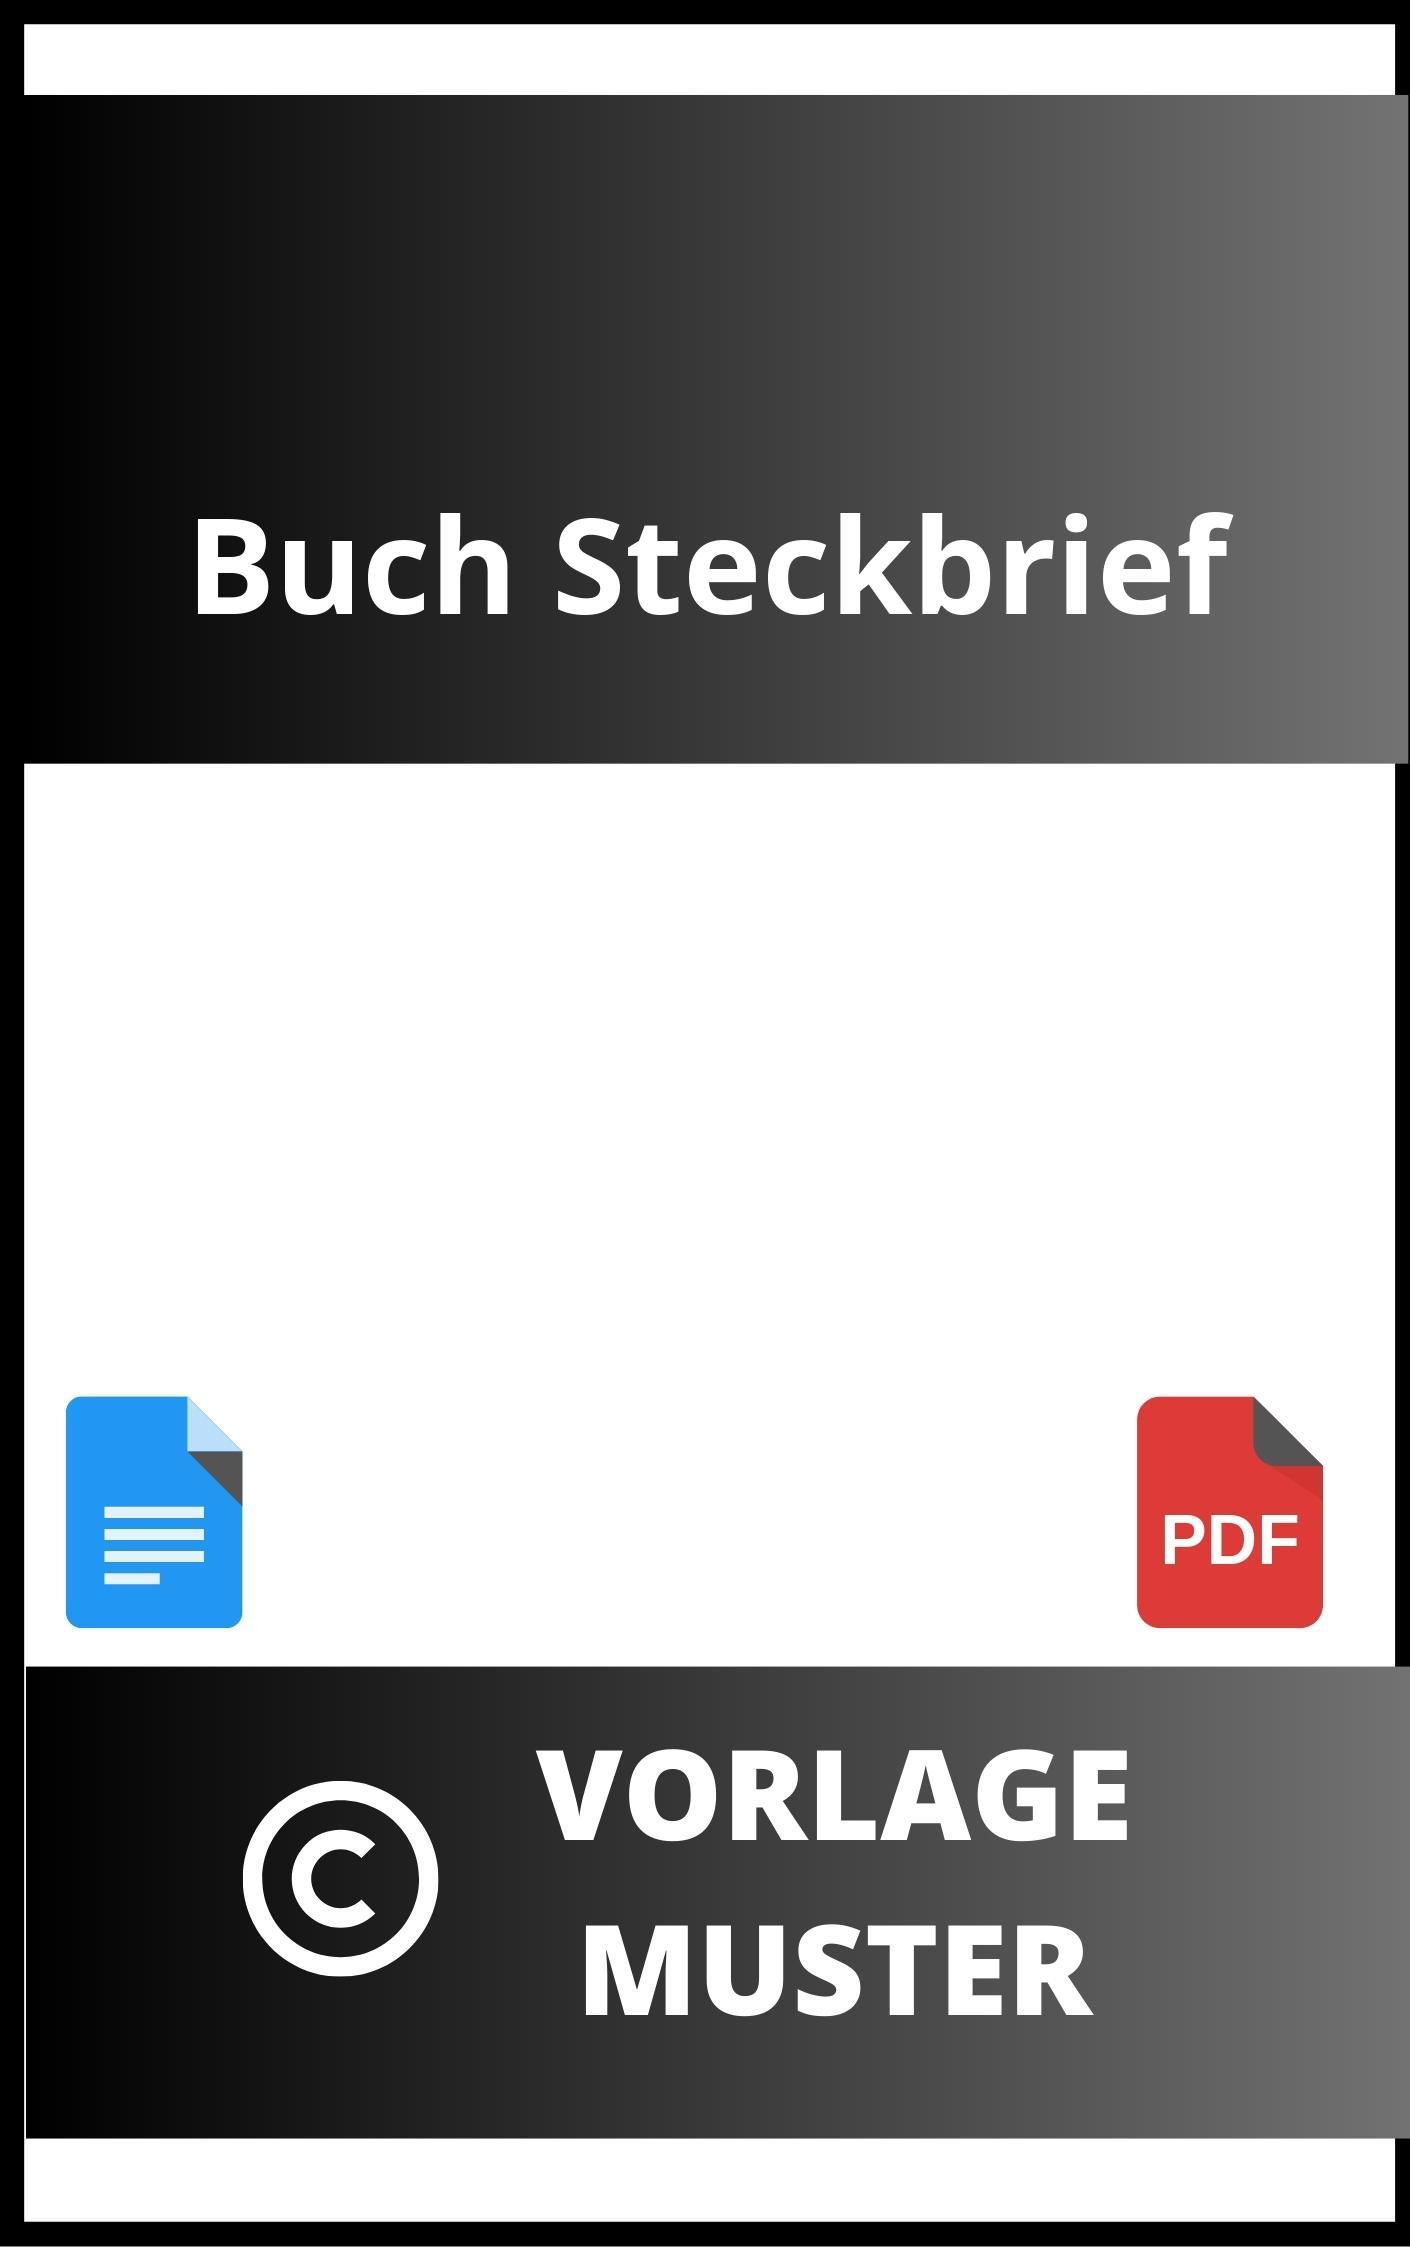 Buch Steckbrief